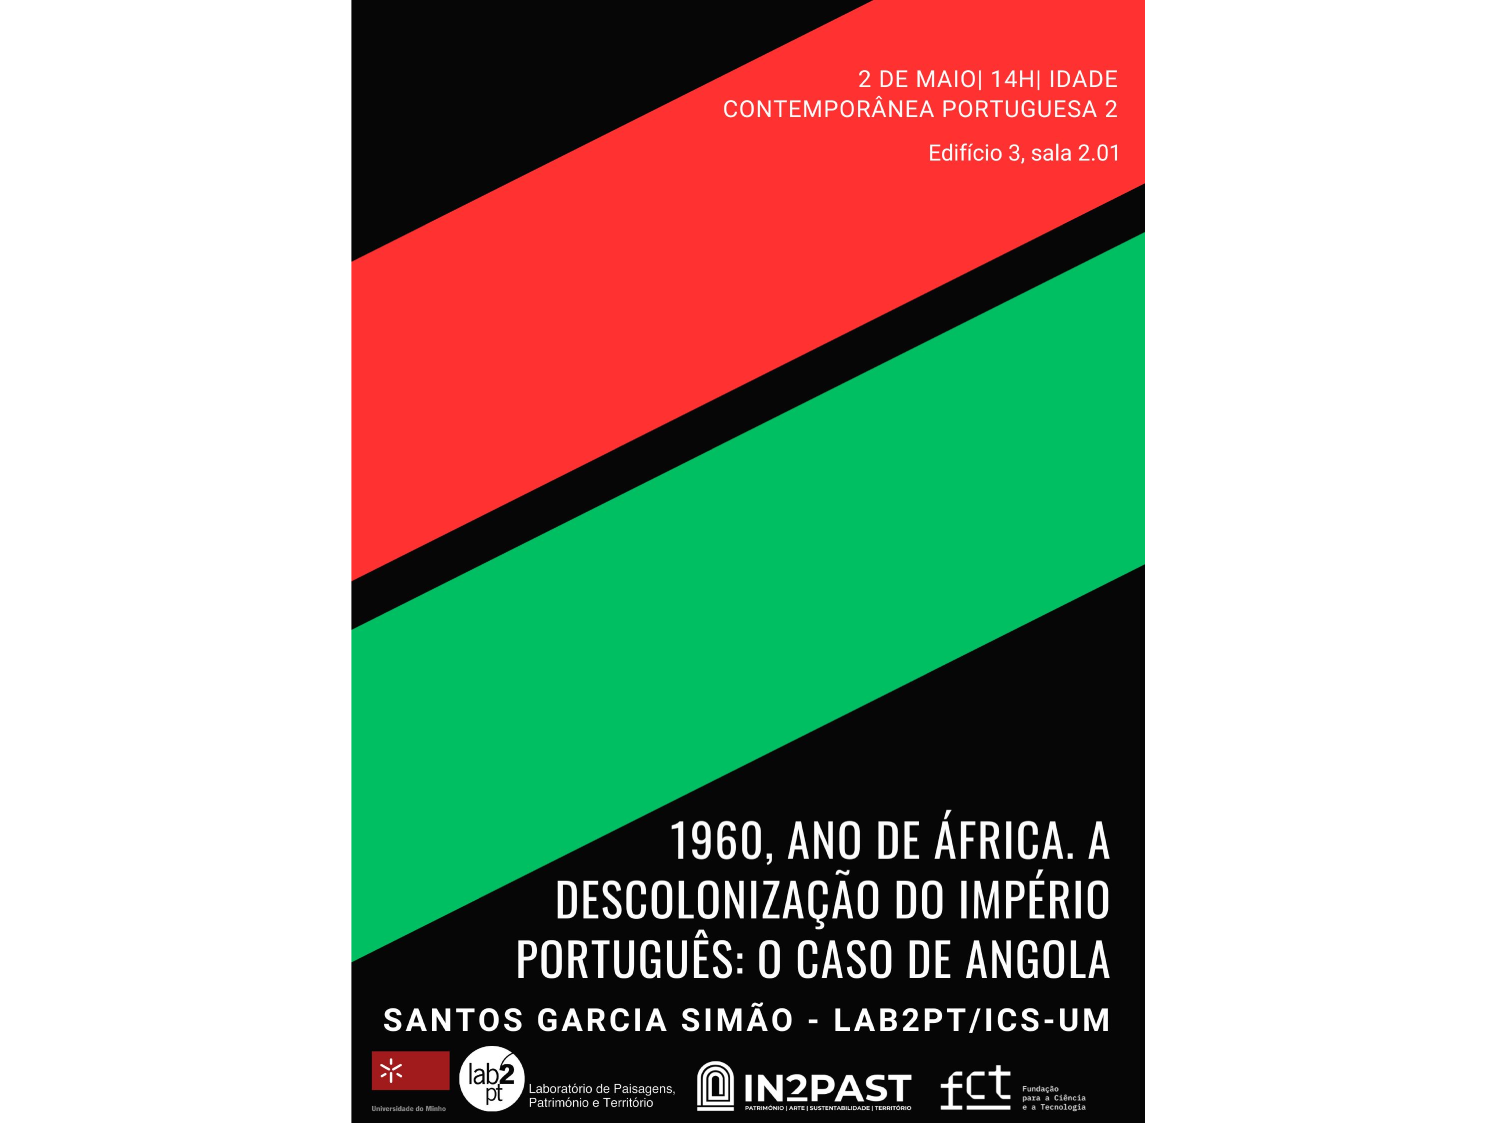 1960, Ano de África. A descolonização do Império Português: o caso de Angola image